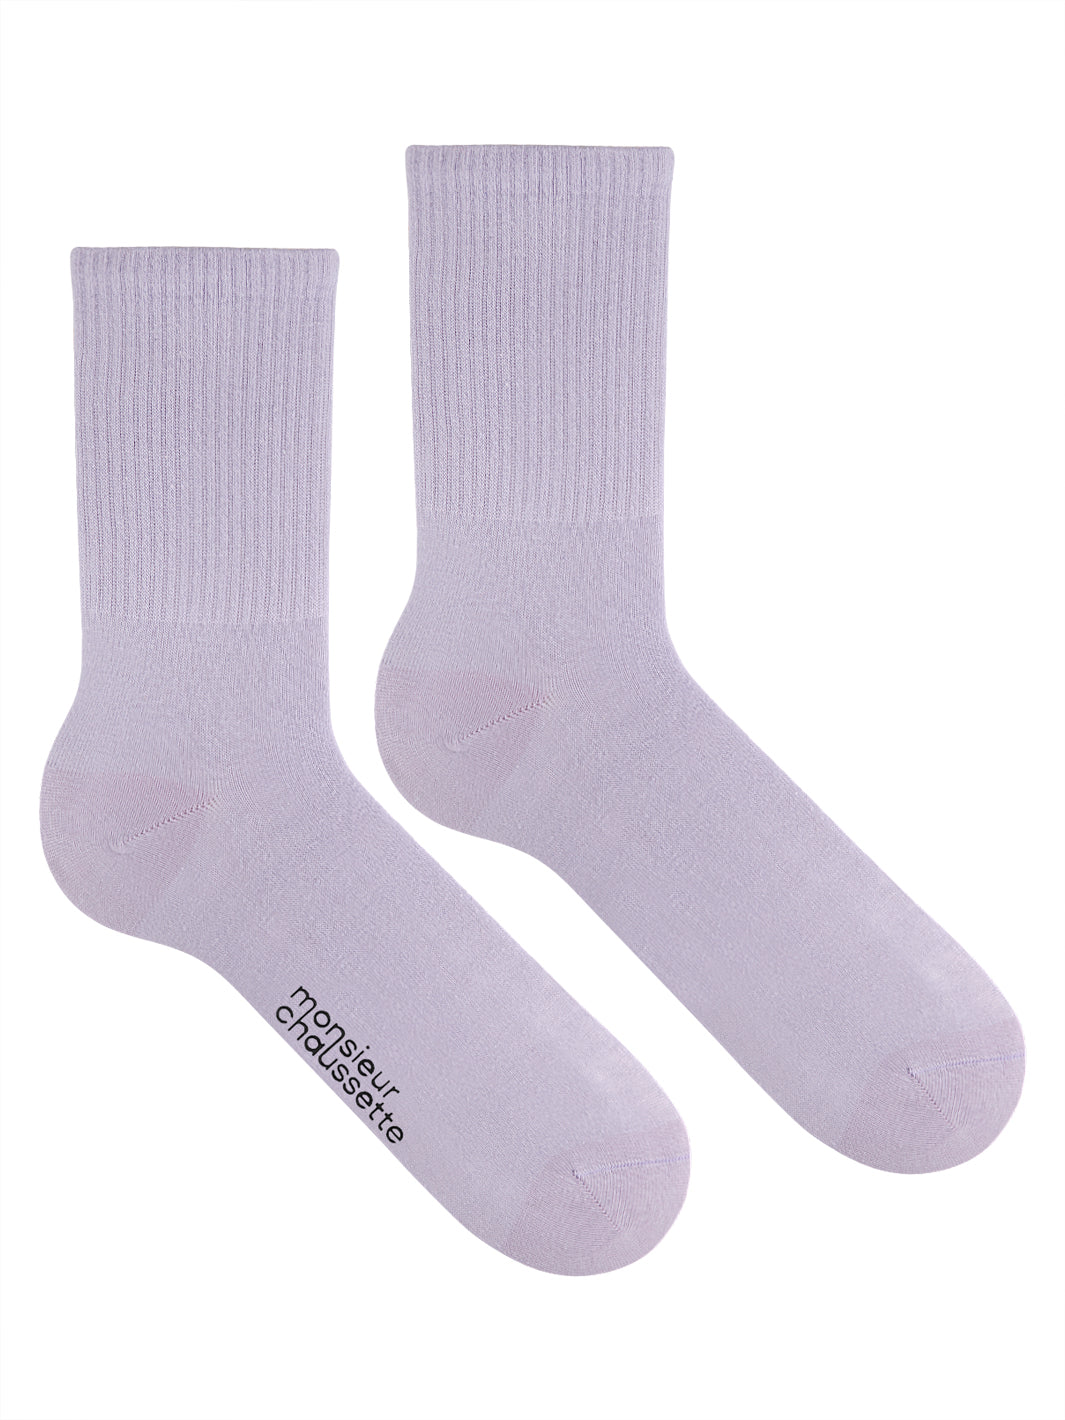 Unıcolor-Lılac Long Socks